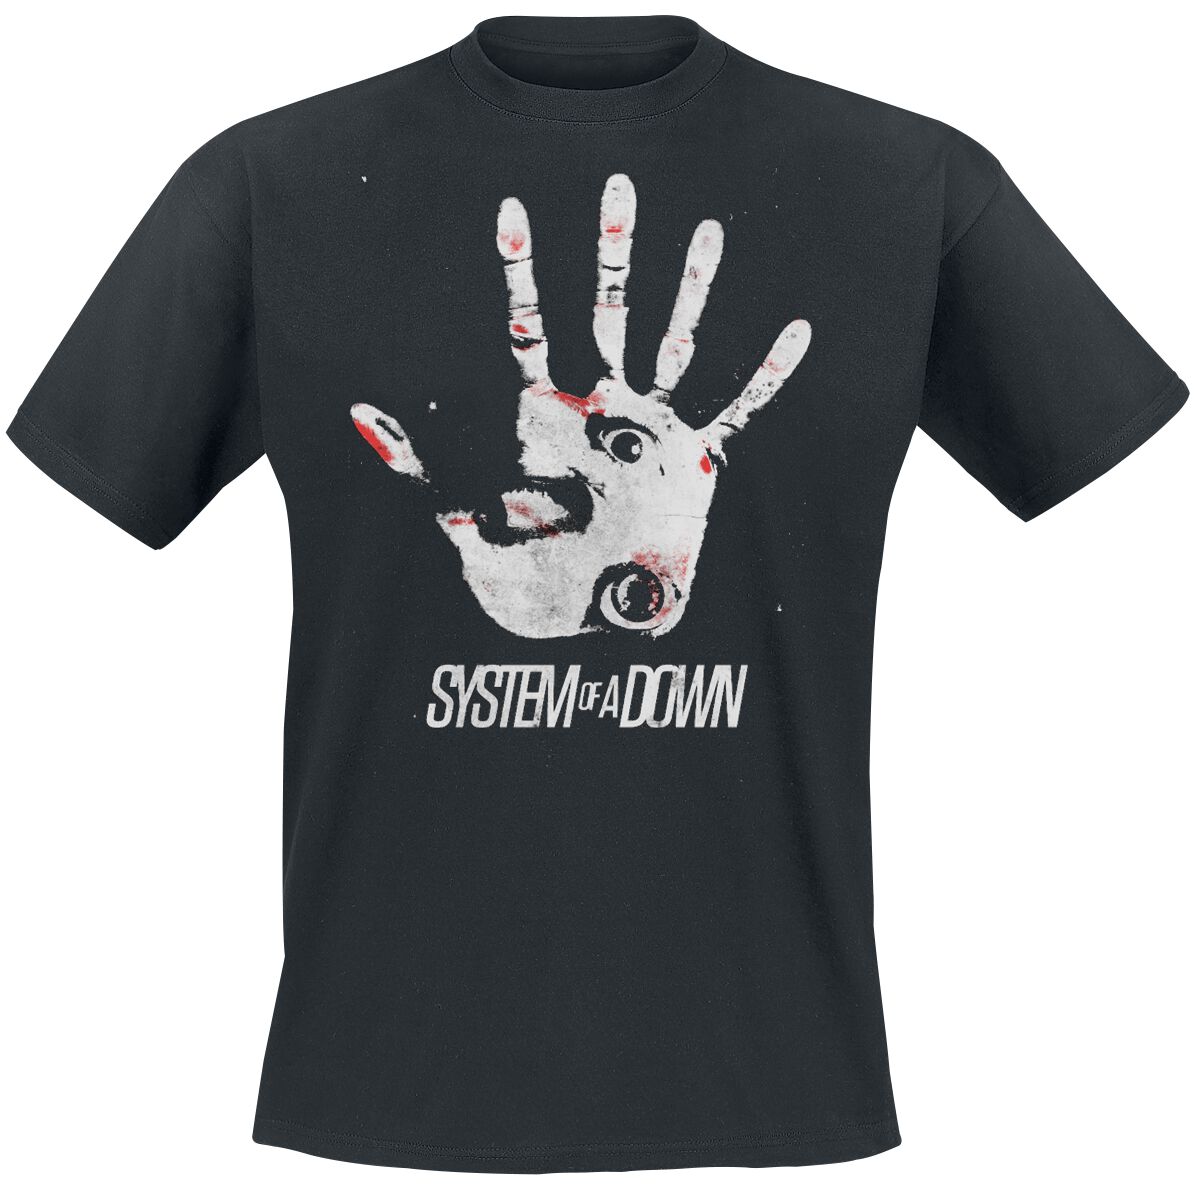 System Of A Down T-Shirt - Hand eye - M bis XXL - für Männer - Größe M - schwarz  - Lizenziertes Merchandise!